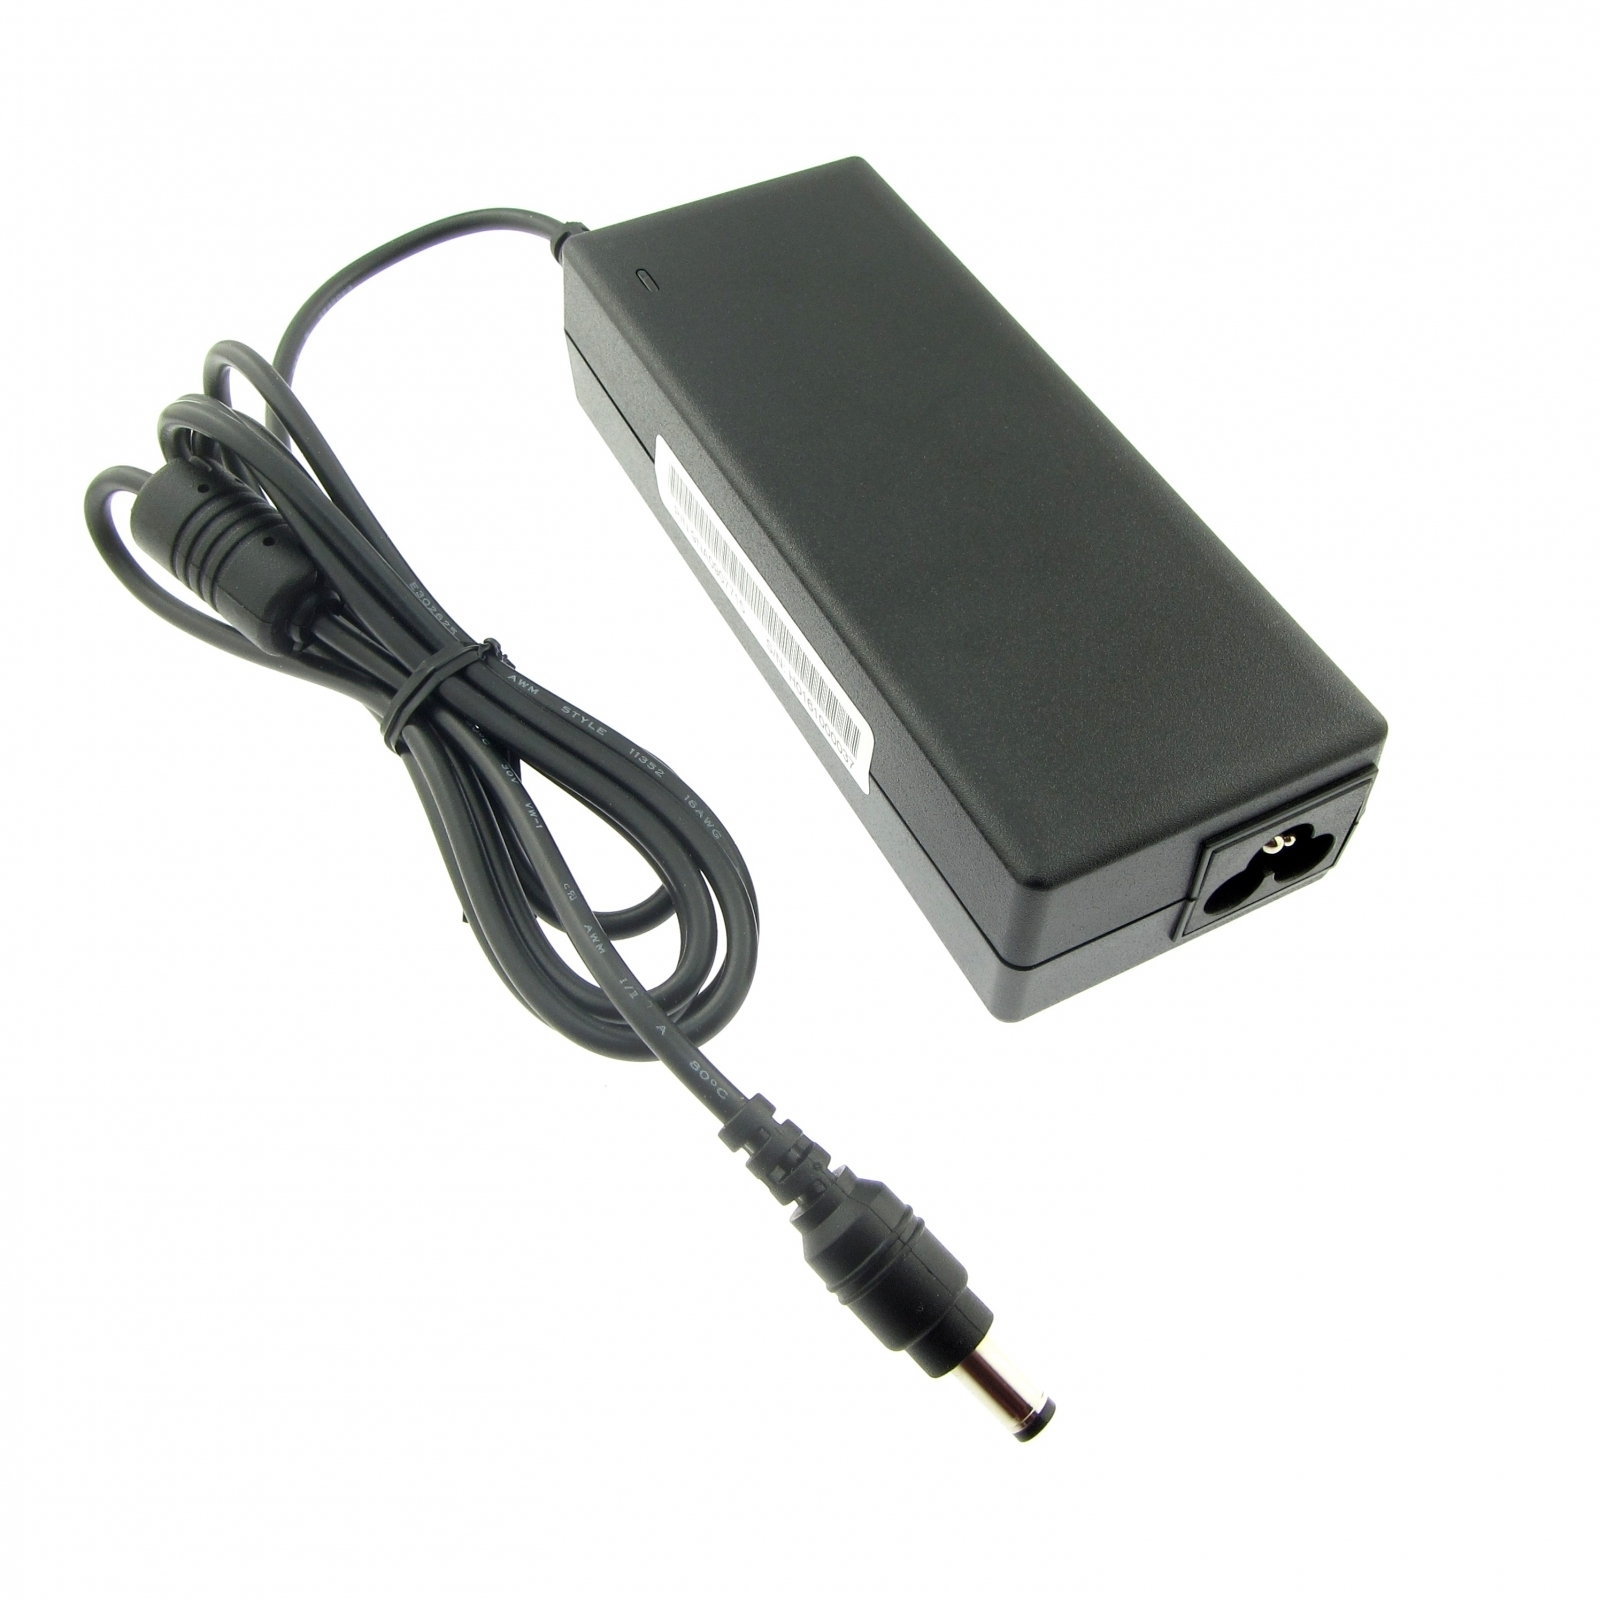 FSP090 (AC-Adapter) FSP090-DMCB1 90 19V FSP 90W Notebook-Netzteil 4.74A Ersatz Marken-Netzteil Watt für original